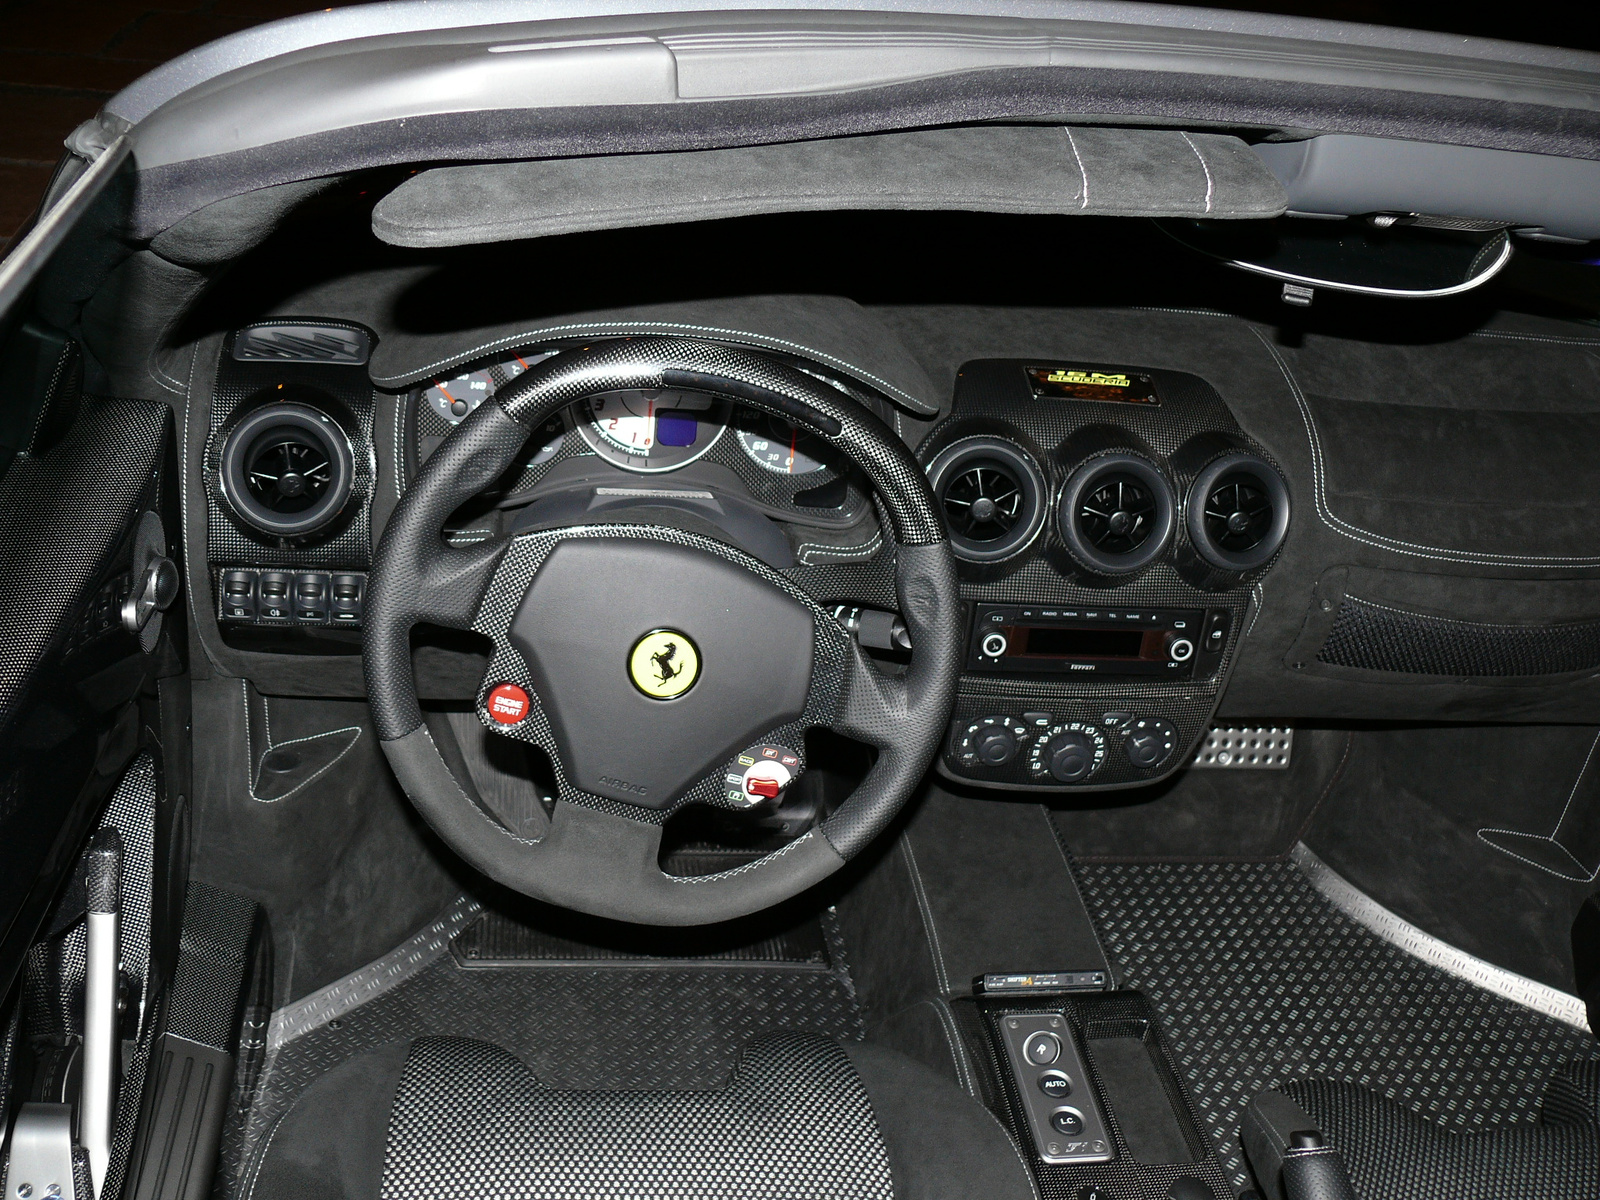 Ferrari F430 Scuderia 16M Full Carbon belső